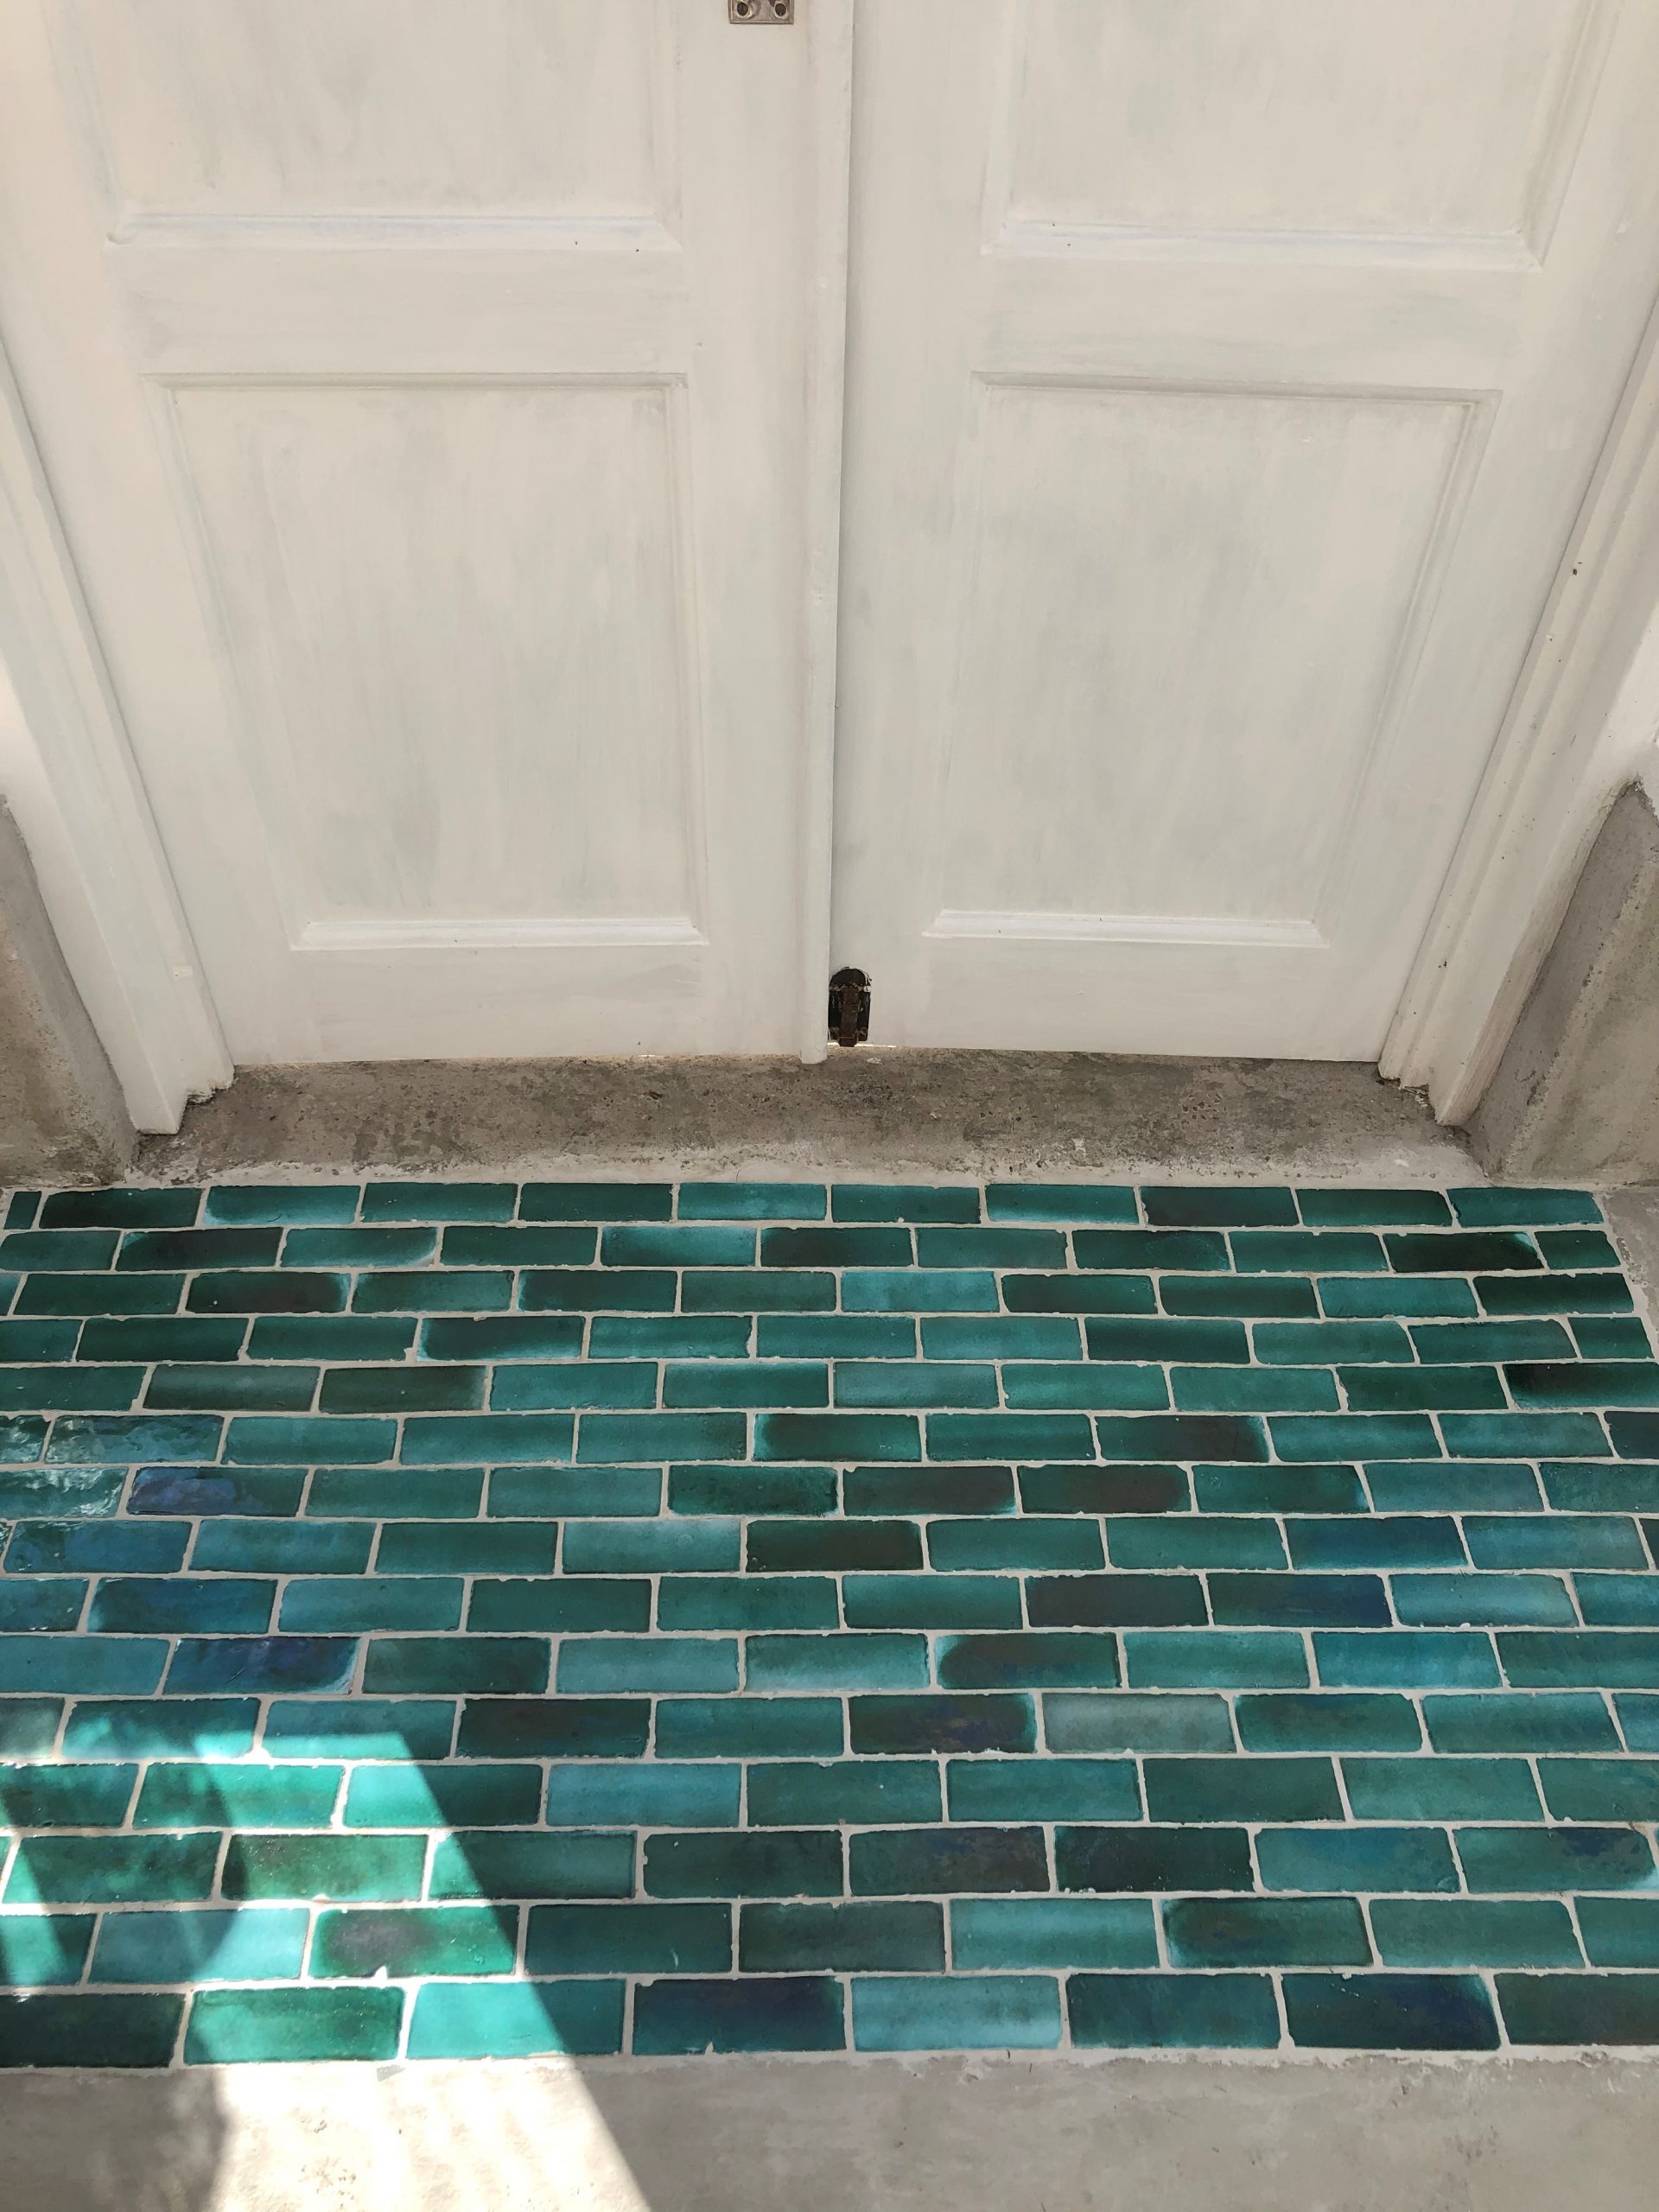 Bejmat Wall Floor Tiles Emerald Green, Green Floor Tile